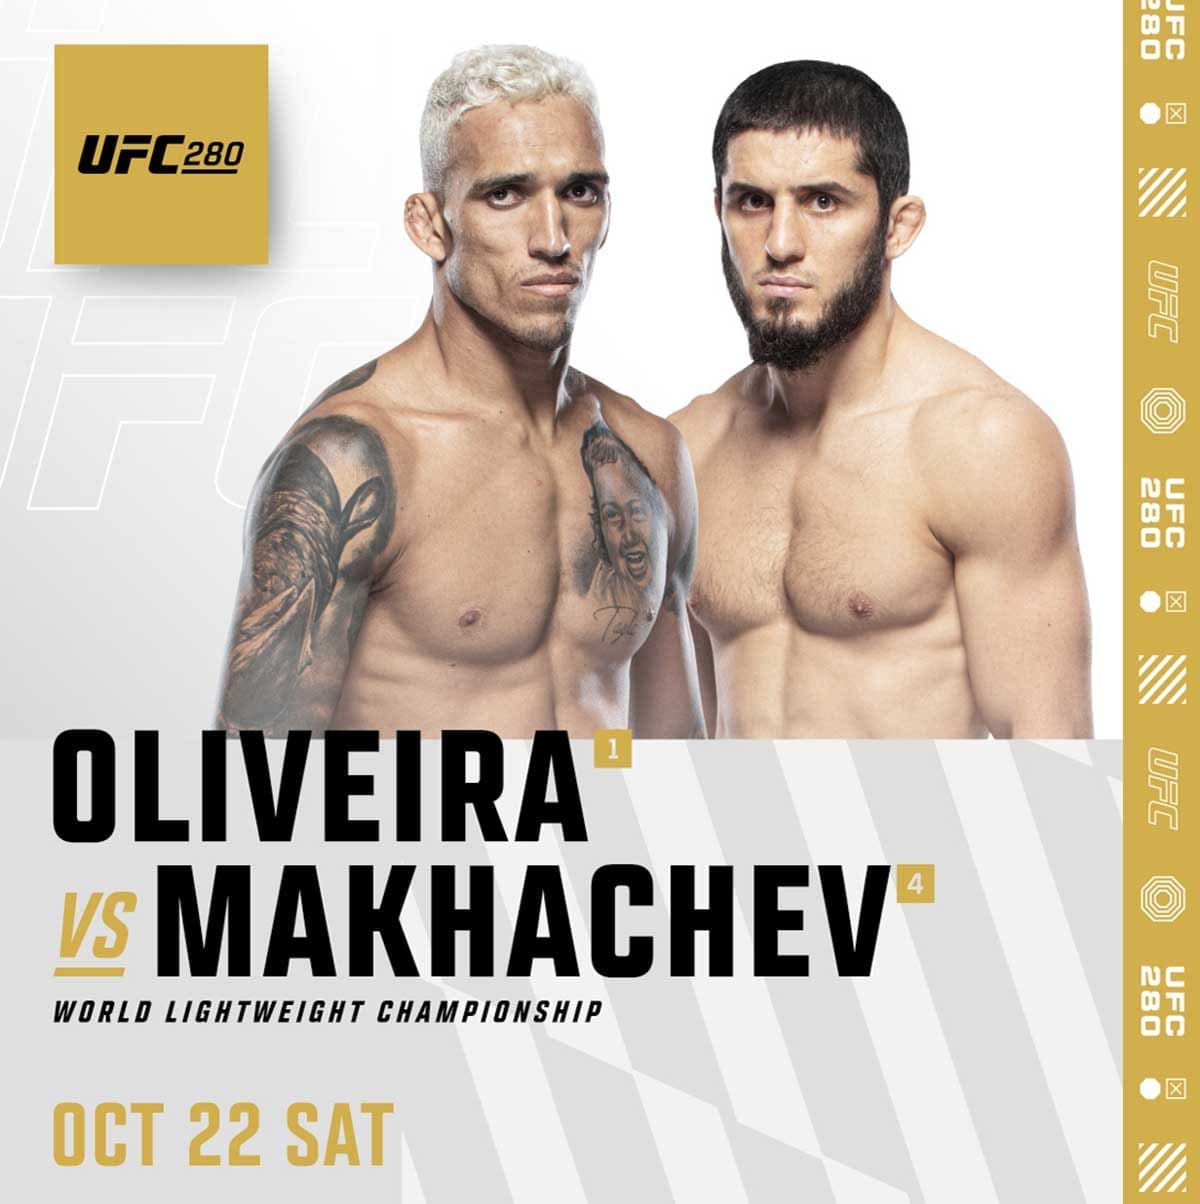 UFC 280: Оливейра - Махачев дата проведения, кард, участники и результаты